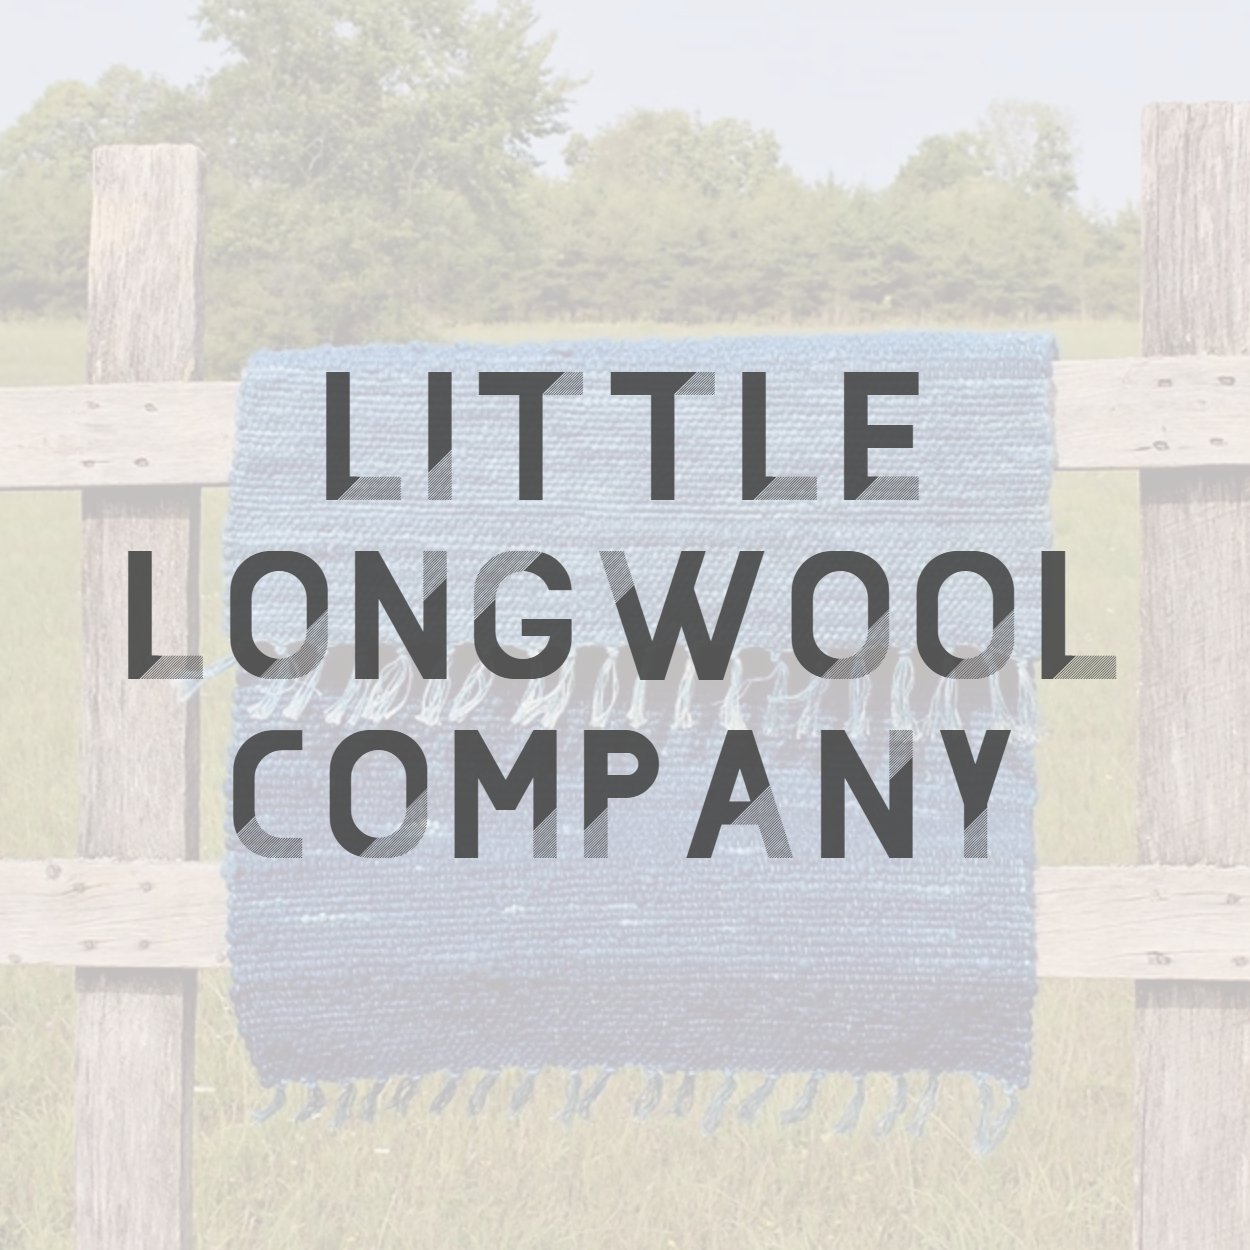 Little Longwool Company.jpg